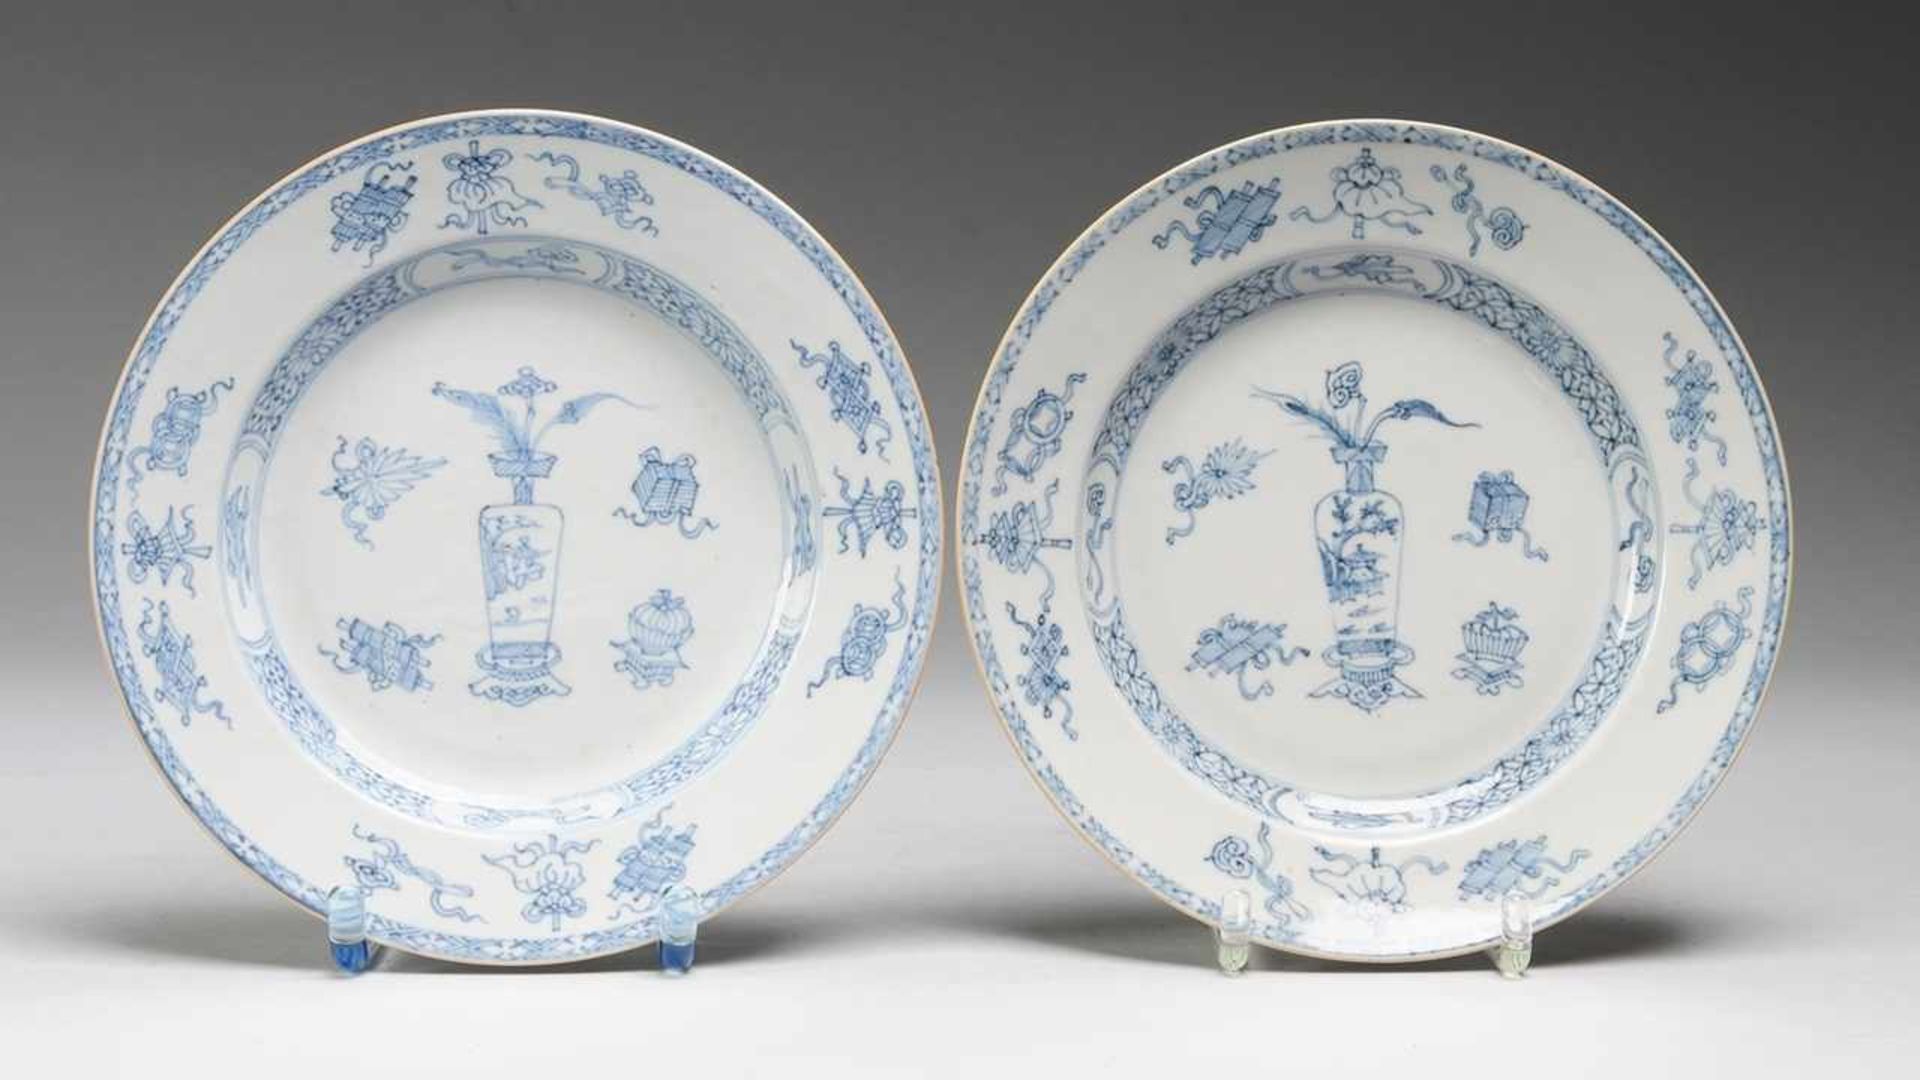 Paar Teller mit Blau-Weiß-DekorDünnwandiges Porzellan. Leicht gemuldete glattrandig Form. In